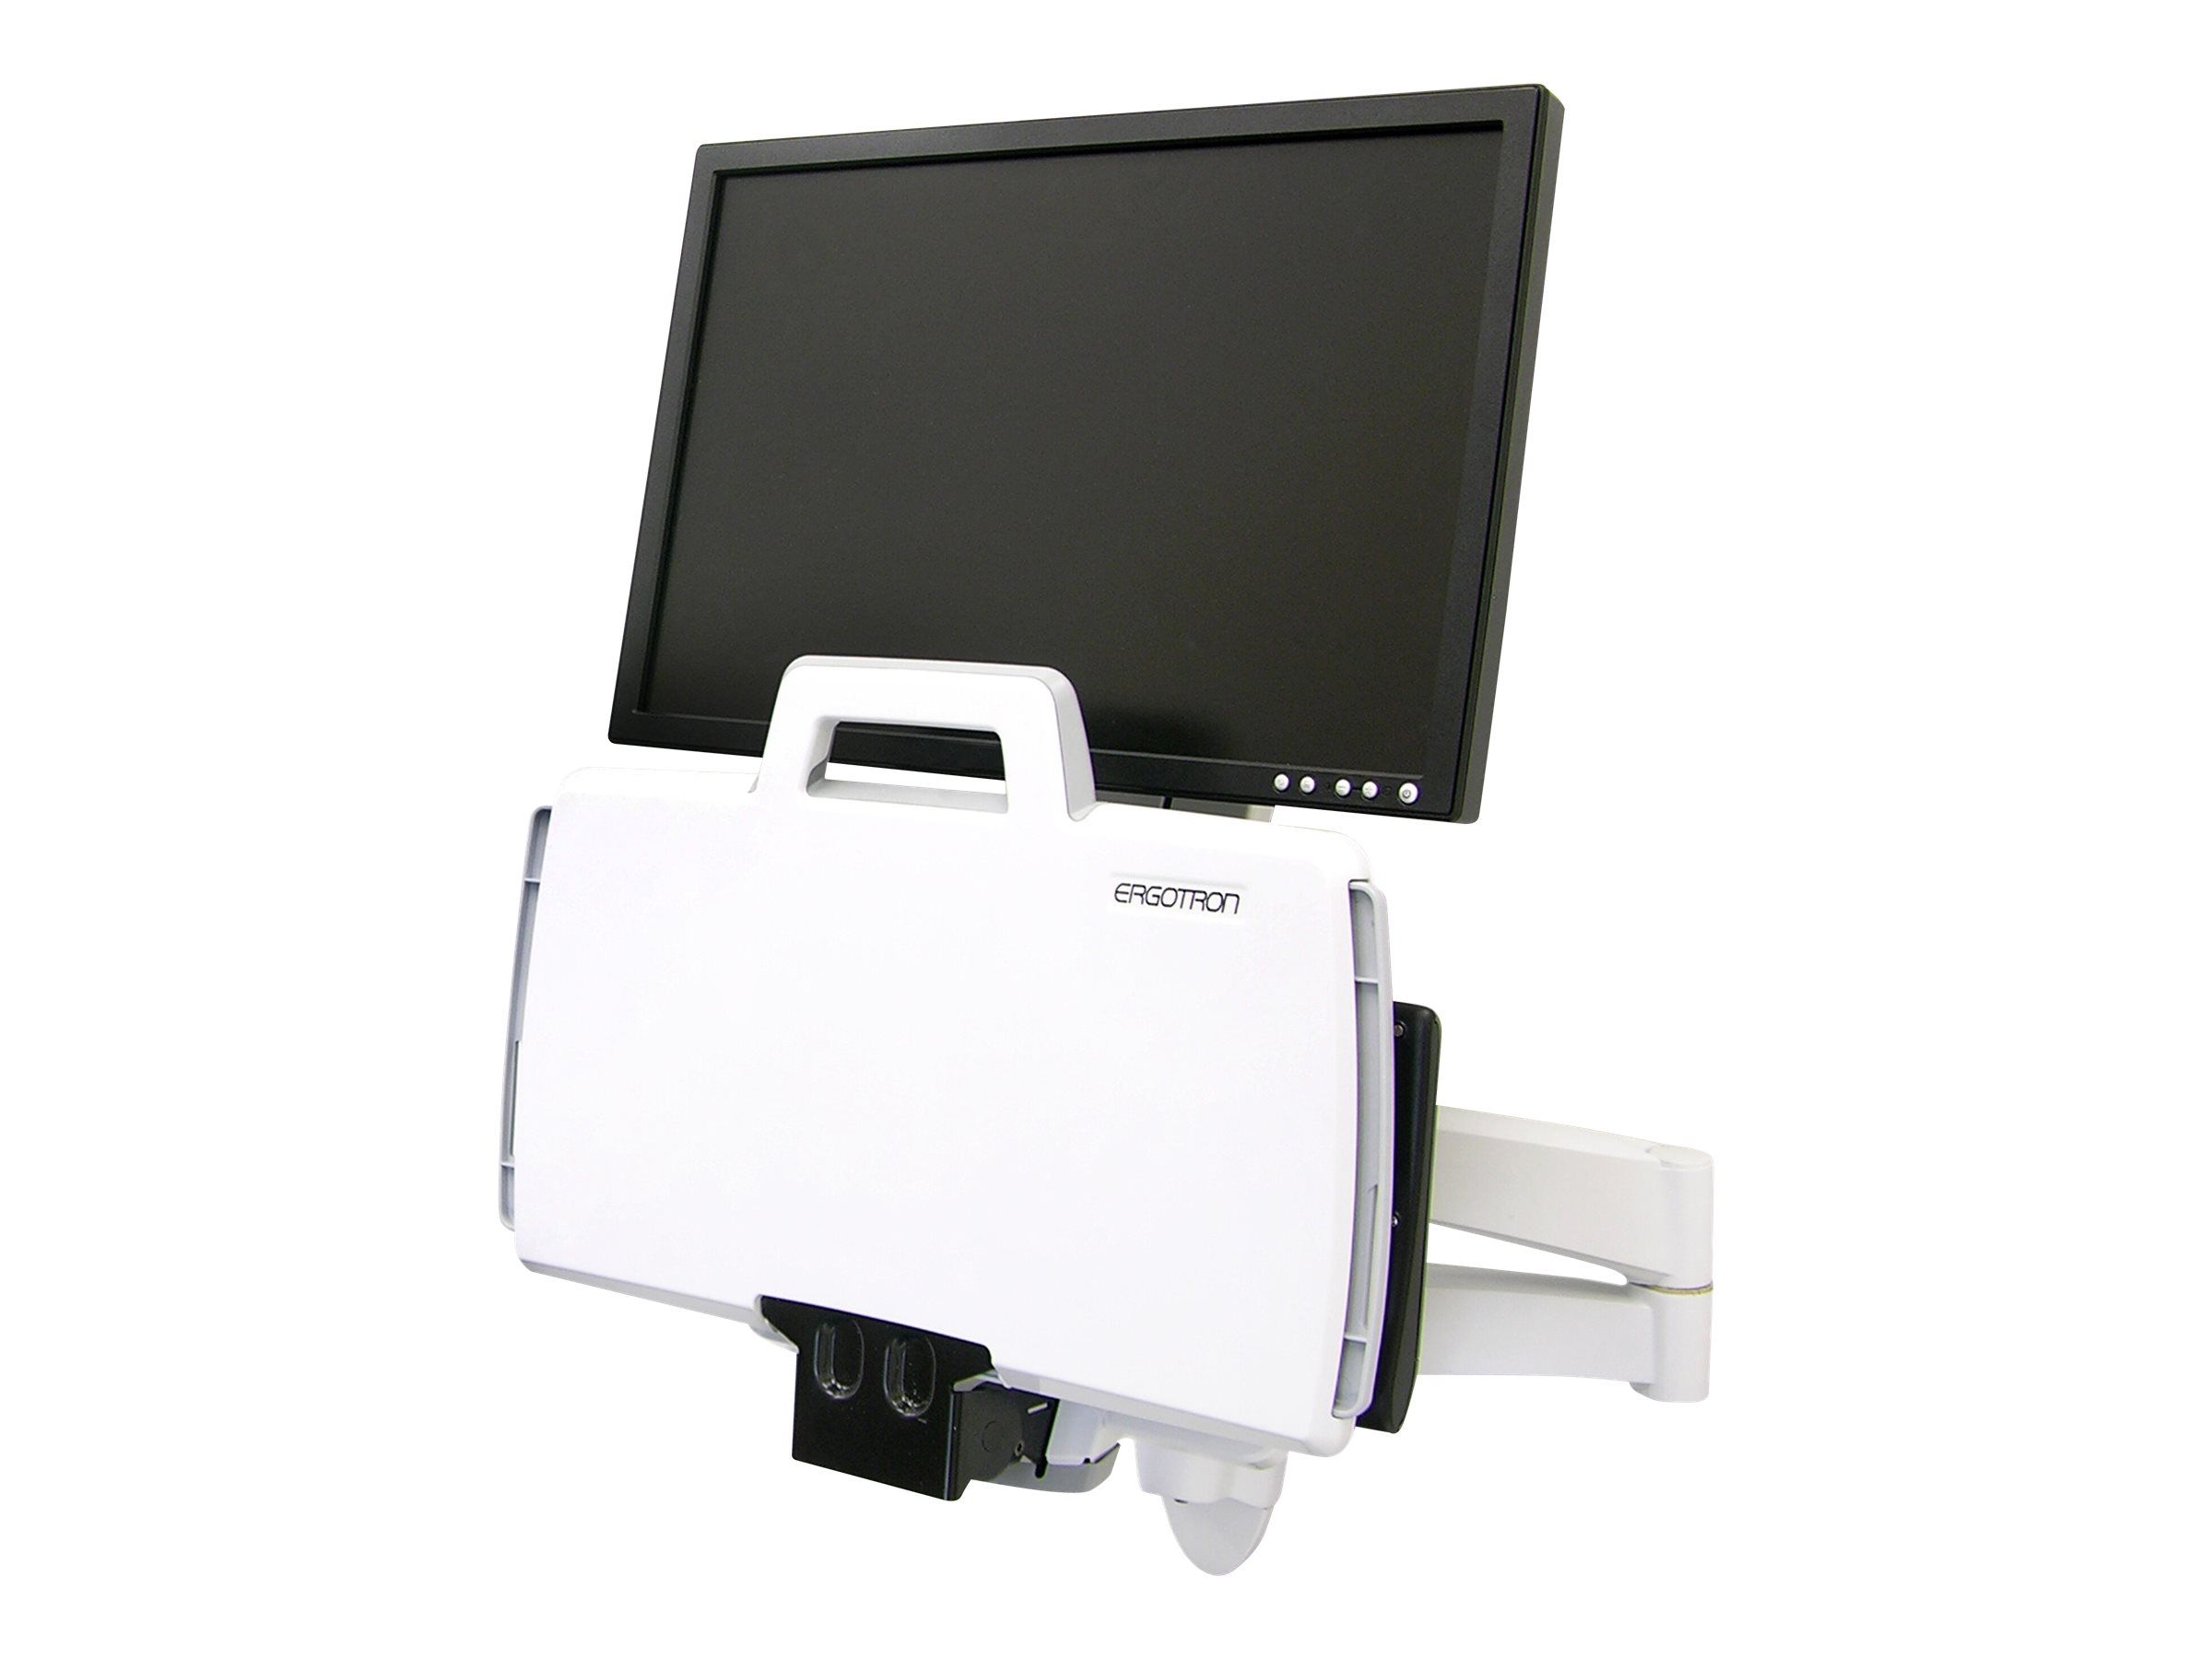 Ergotron 200 Series - Kit de montage (bras articulé, support de lecteur de codes à barres, plateau de clavier avec plateau de souris gauche/droite) - pour écran LCD/équipement PC - acier - blanc - Taille d'écran : jusqu'à 24 pouces - montable sur mur - 45-230-216 - Accessoires pour écran